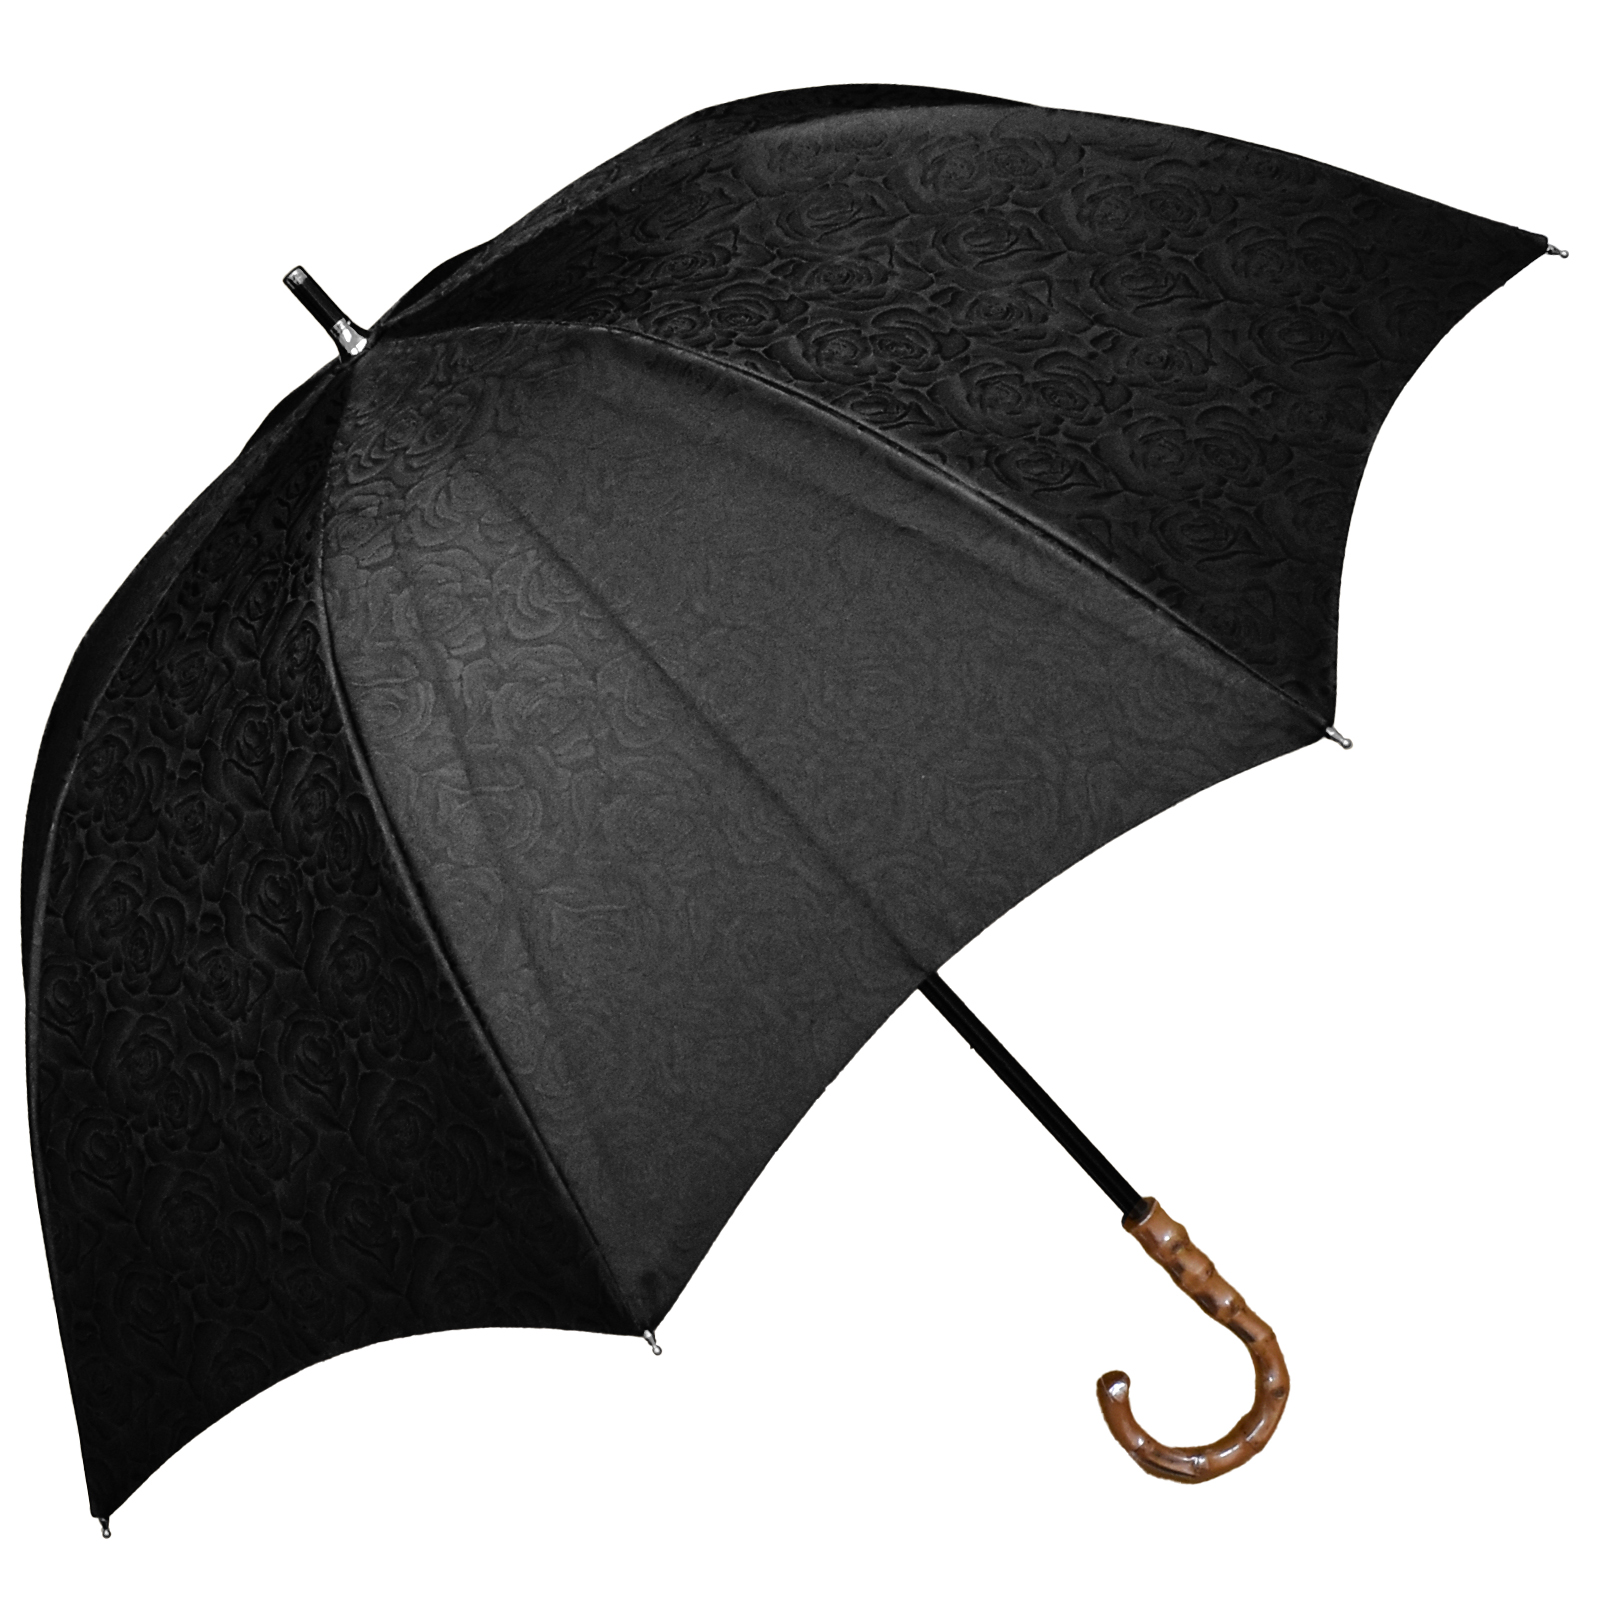 日傘 完全遮光 長傘 uv 晴雨兼用 1級遮光 遮熱 涼しい おしゃれ 軽量 完全遮光 プレーン ロ...